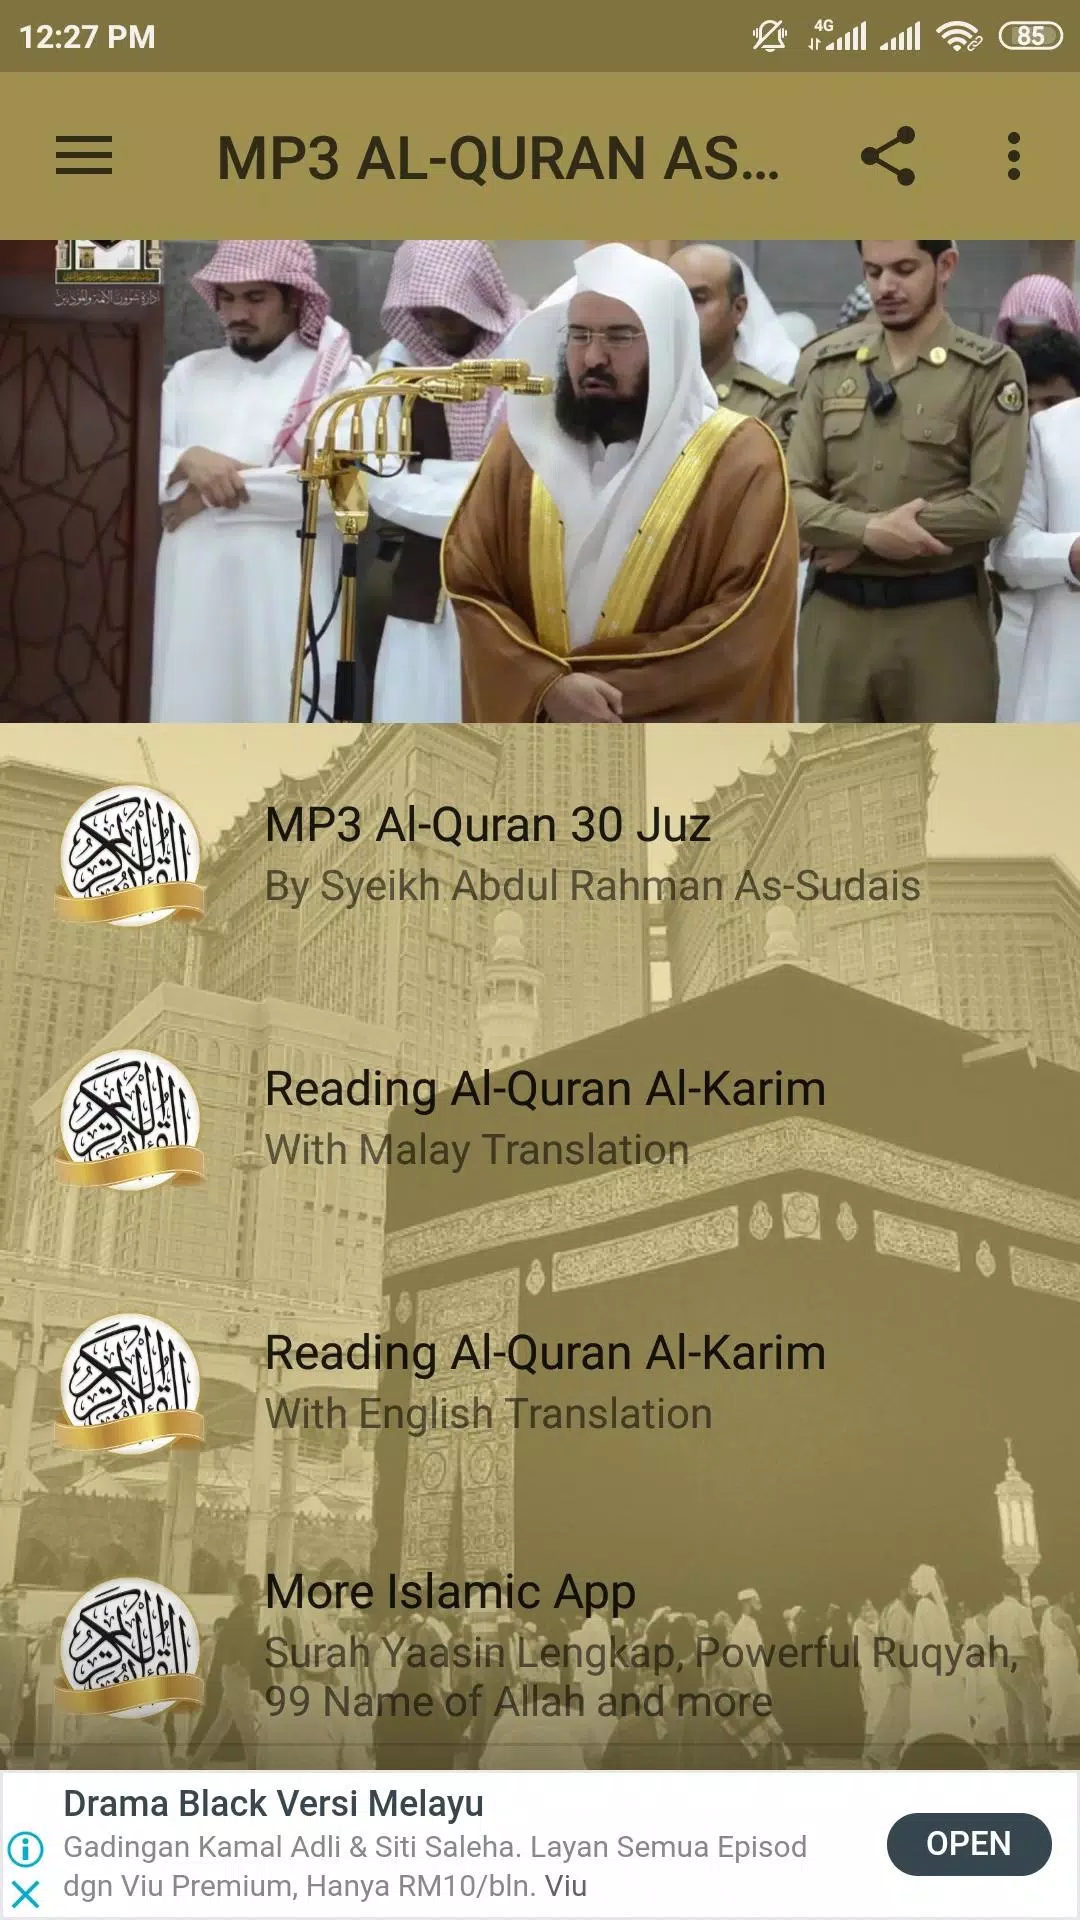 MP3 FULL AL-QURAN ABDURAHMAN AS-SUDAIS APK for Android Download